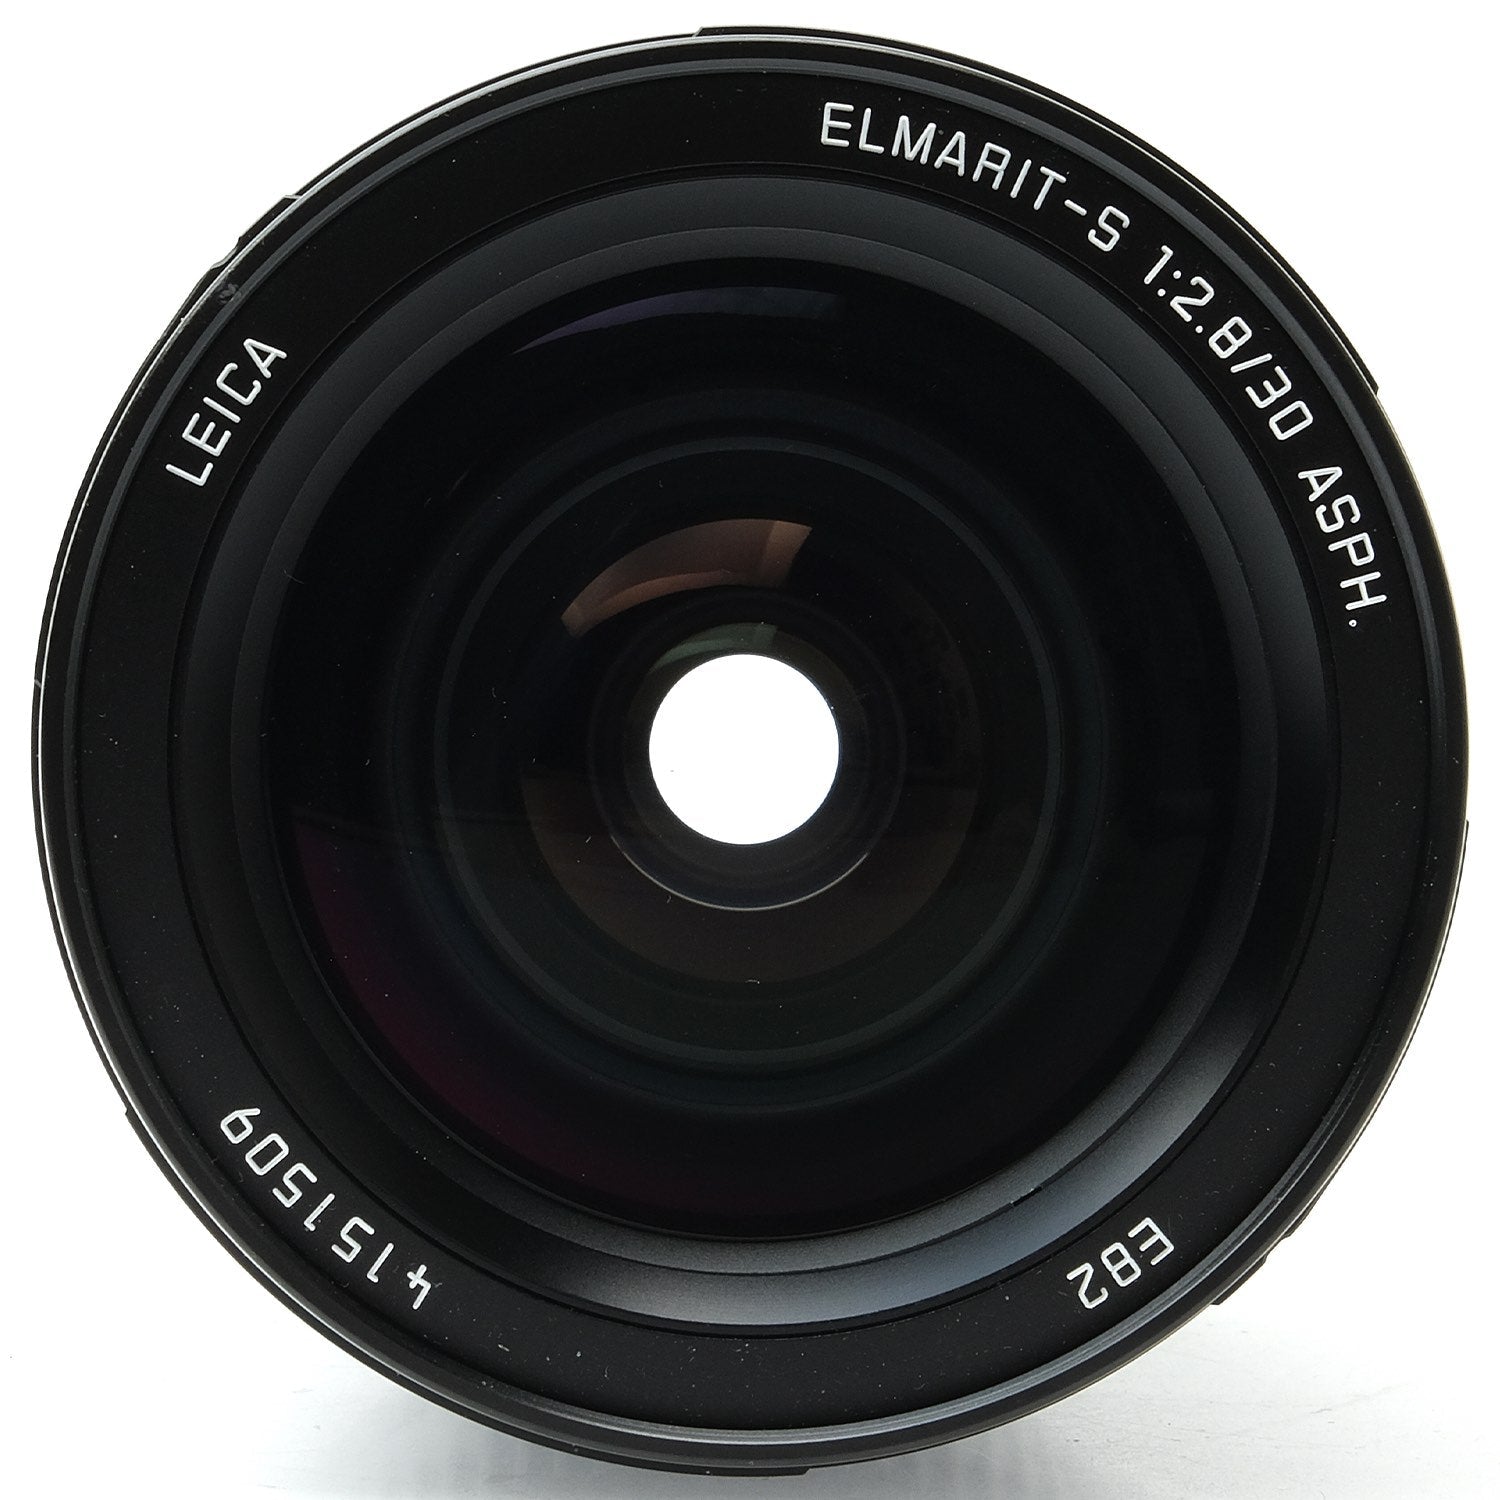 Leica S 30mm f2.8 ASPH, Boxed w/ Warranty 4151509